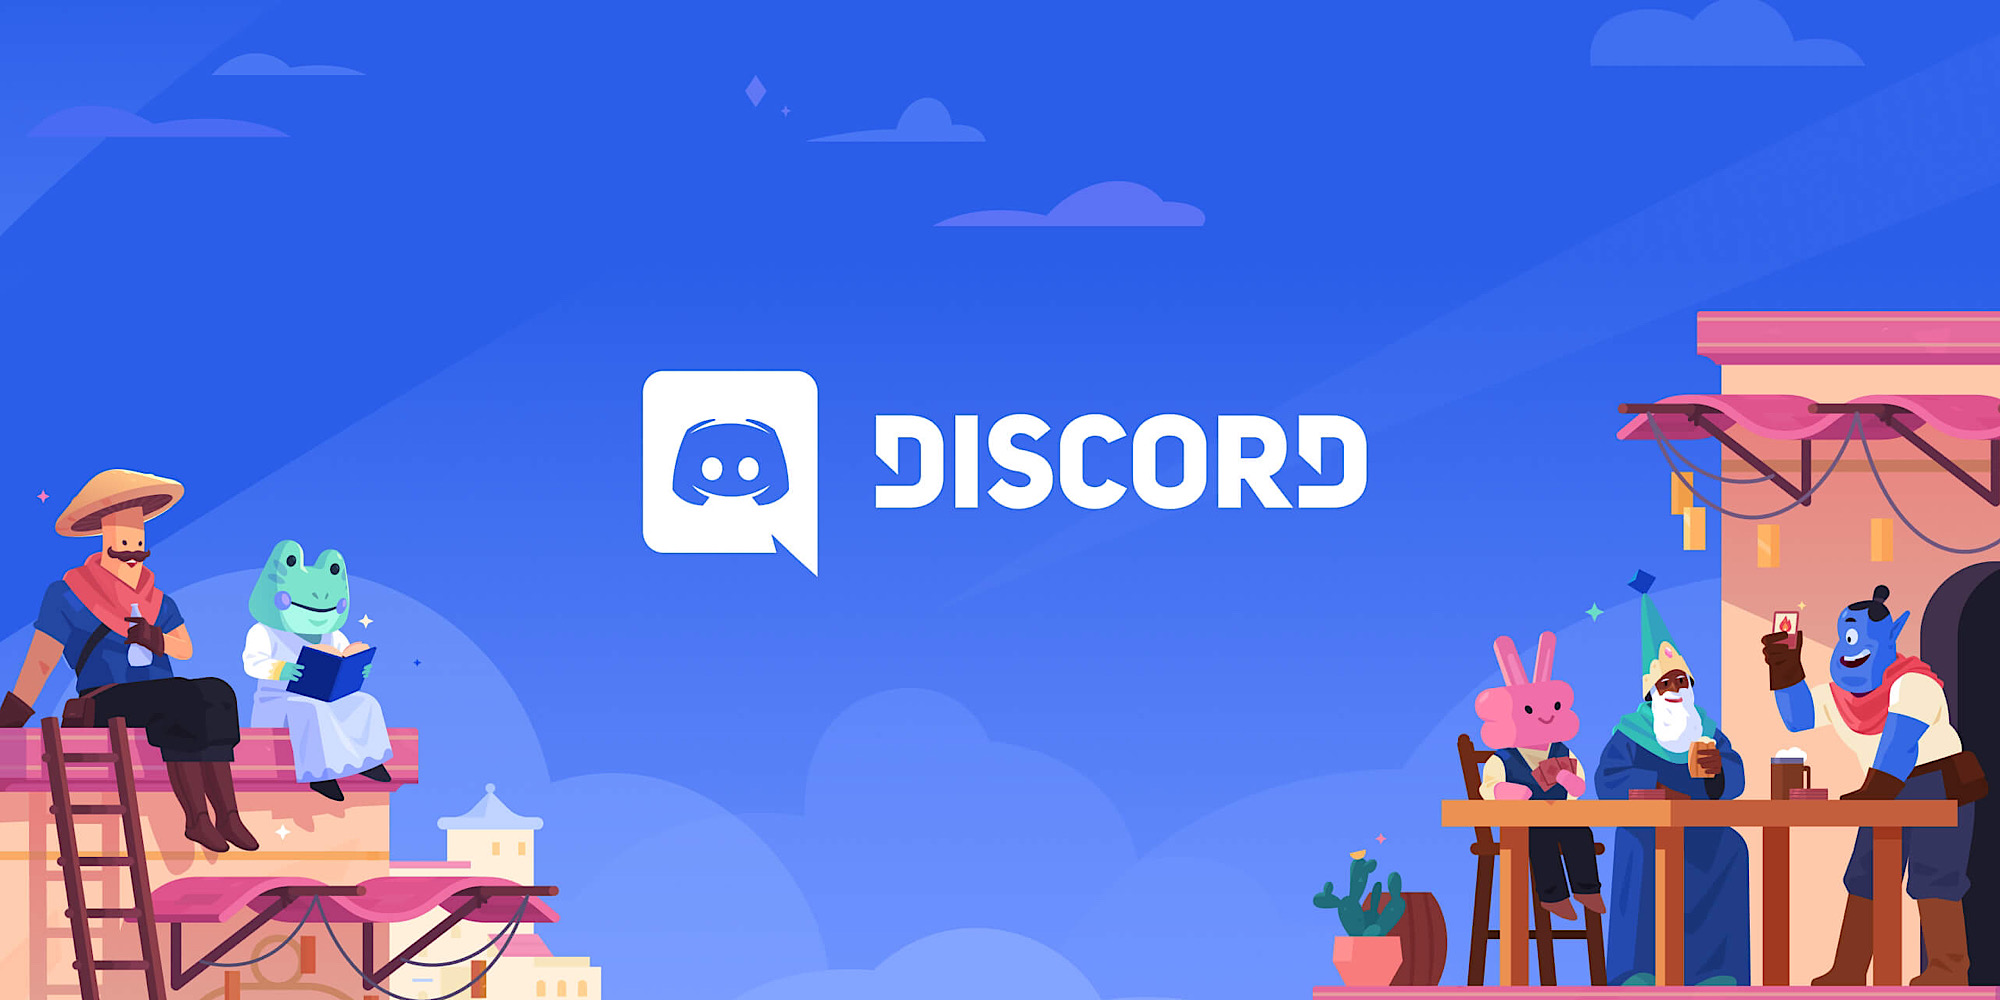 برنامه دیسکورد - Discord